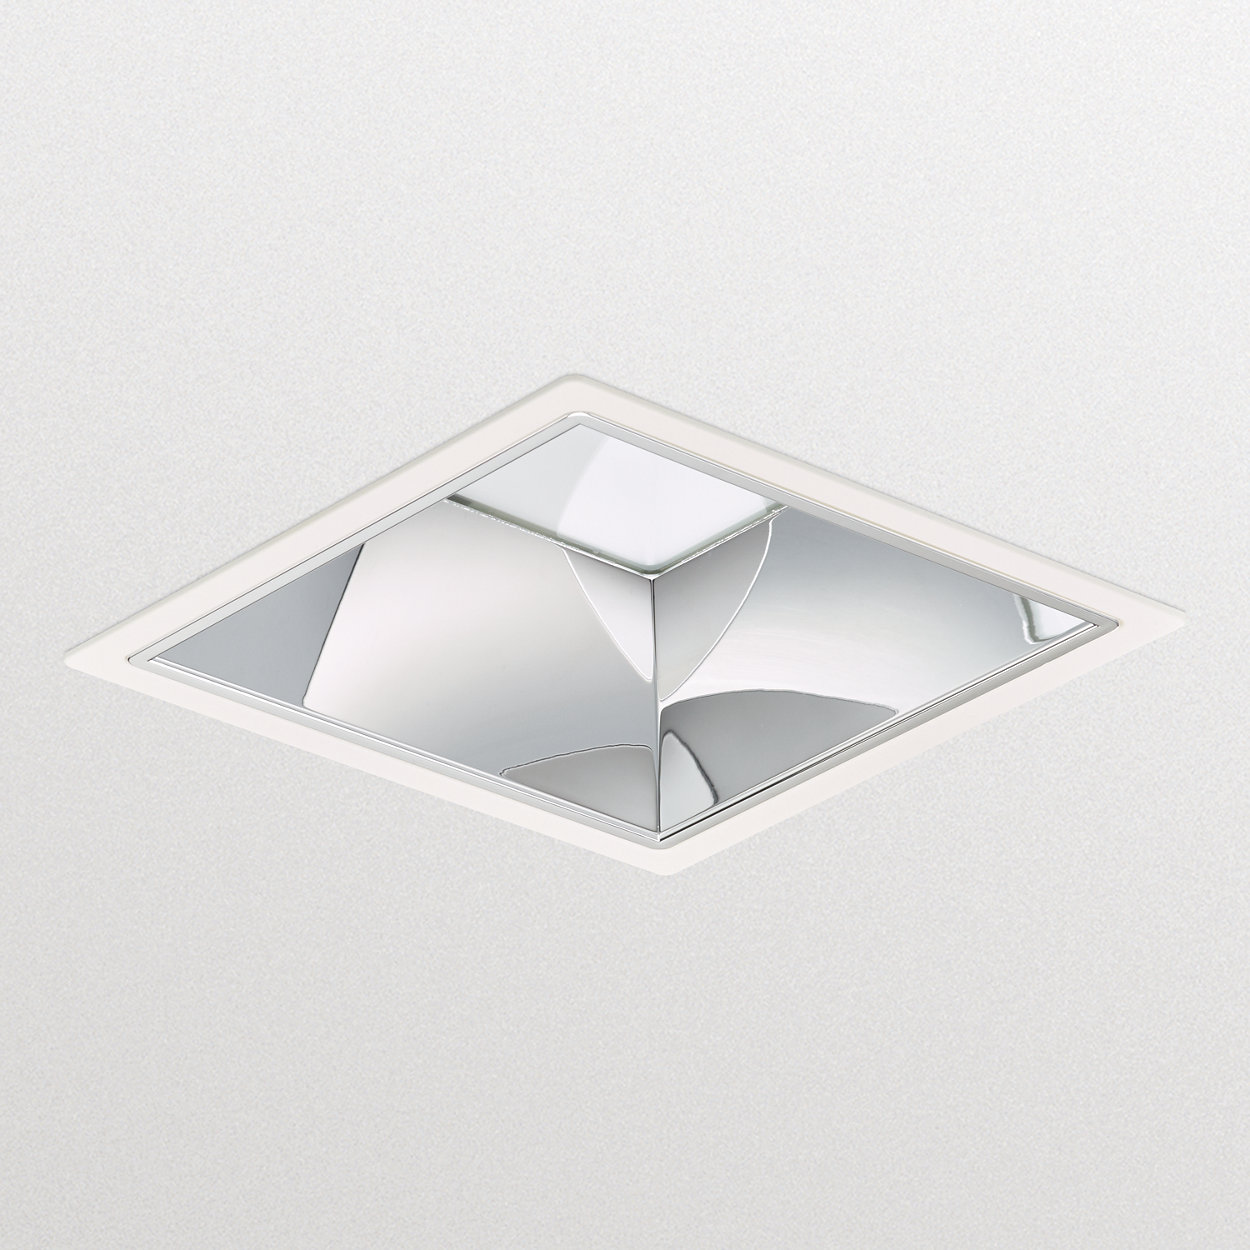 LuxSpace square, embutida – alta eficiência, conforto visual e design diferenciado